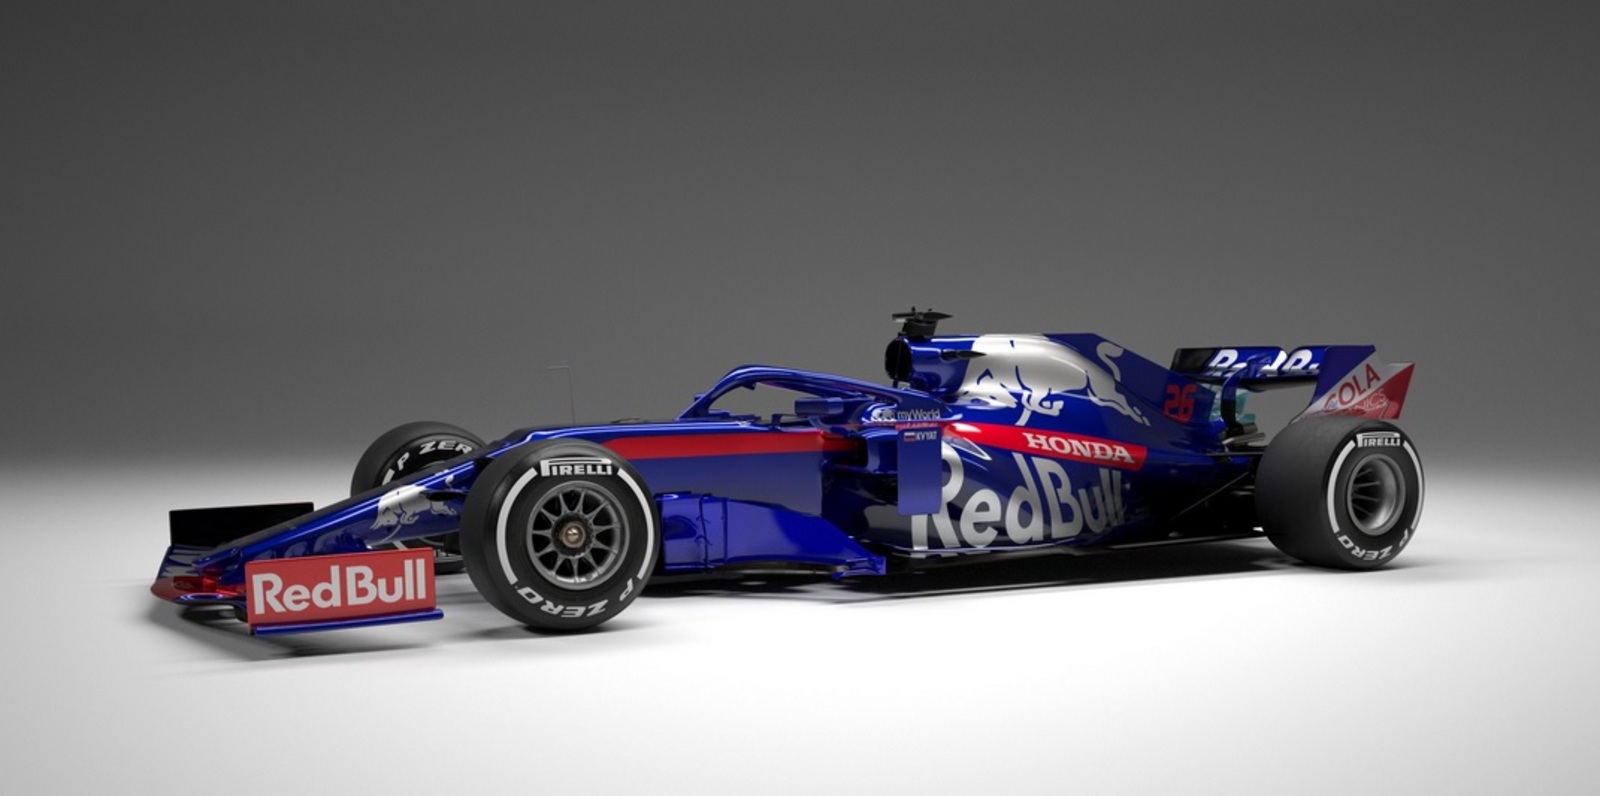 Así lucirá el monoplaza de la escudería Toro Rosso en la próxima temporada de la Fórmula Uno.